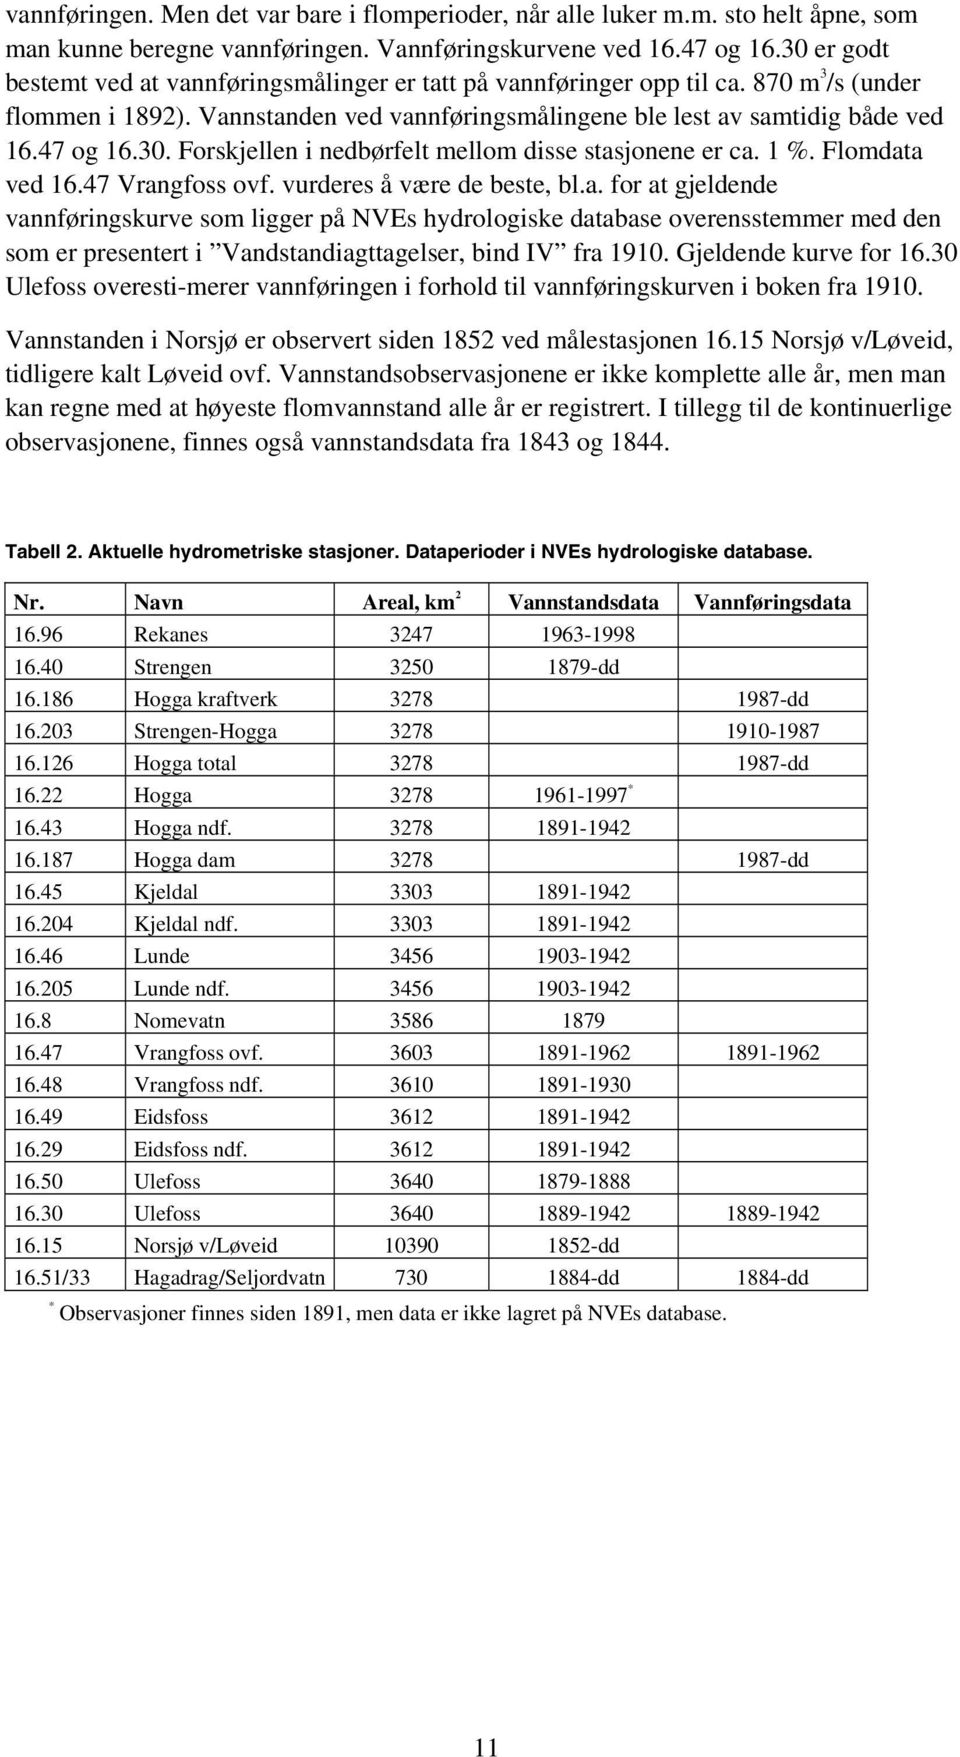 1 %. Flomdata ved 16.47 Vrangfoss ovf. vurderes å være de beste, bl.a. for at gjeldende vannføringskurve som ligger på NVEs hydrologiske database overensstemmer med den som er presentert i Vandstandiagttagelser, bind IV fra 1910.